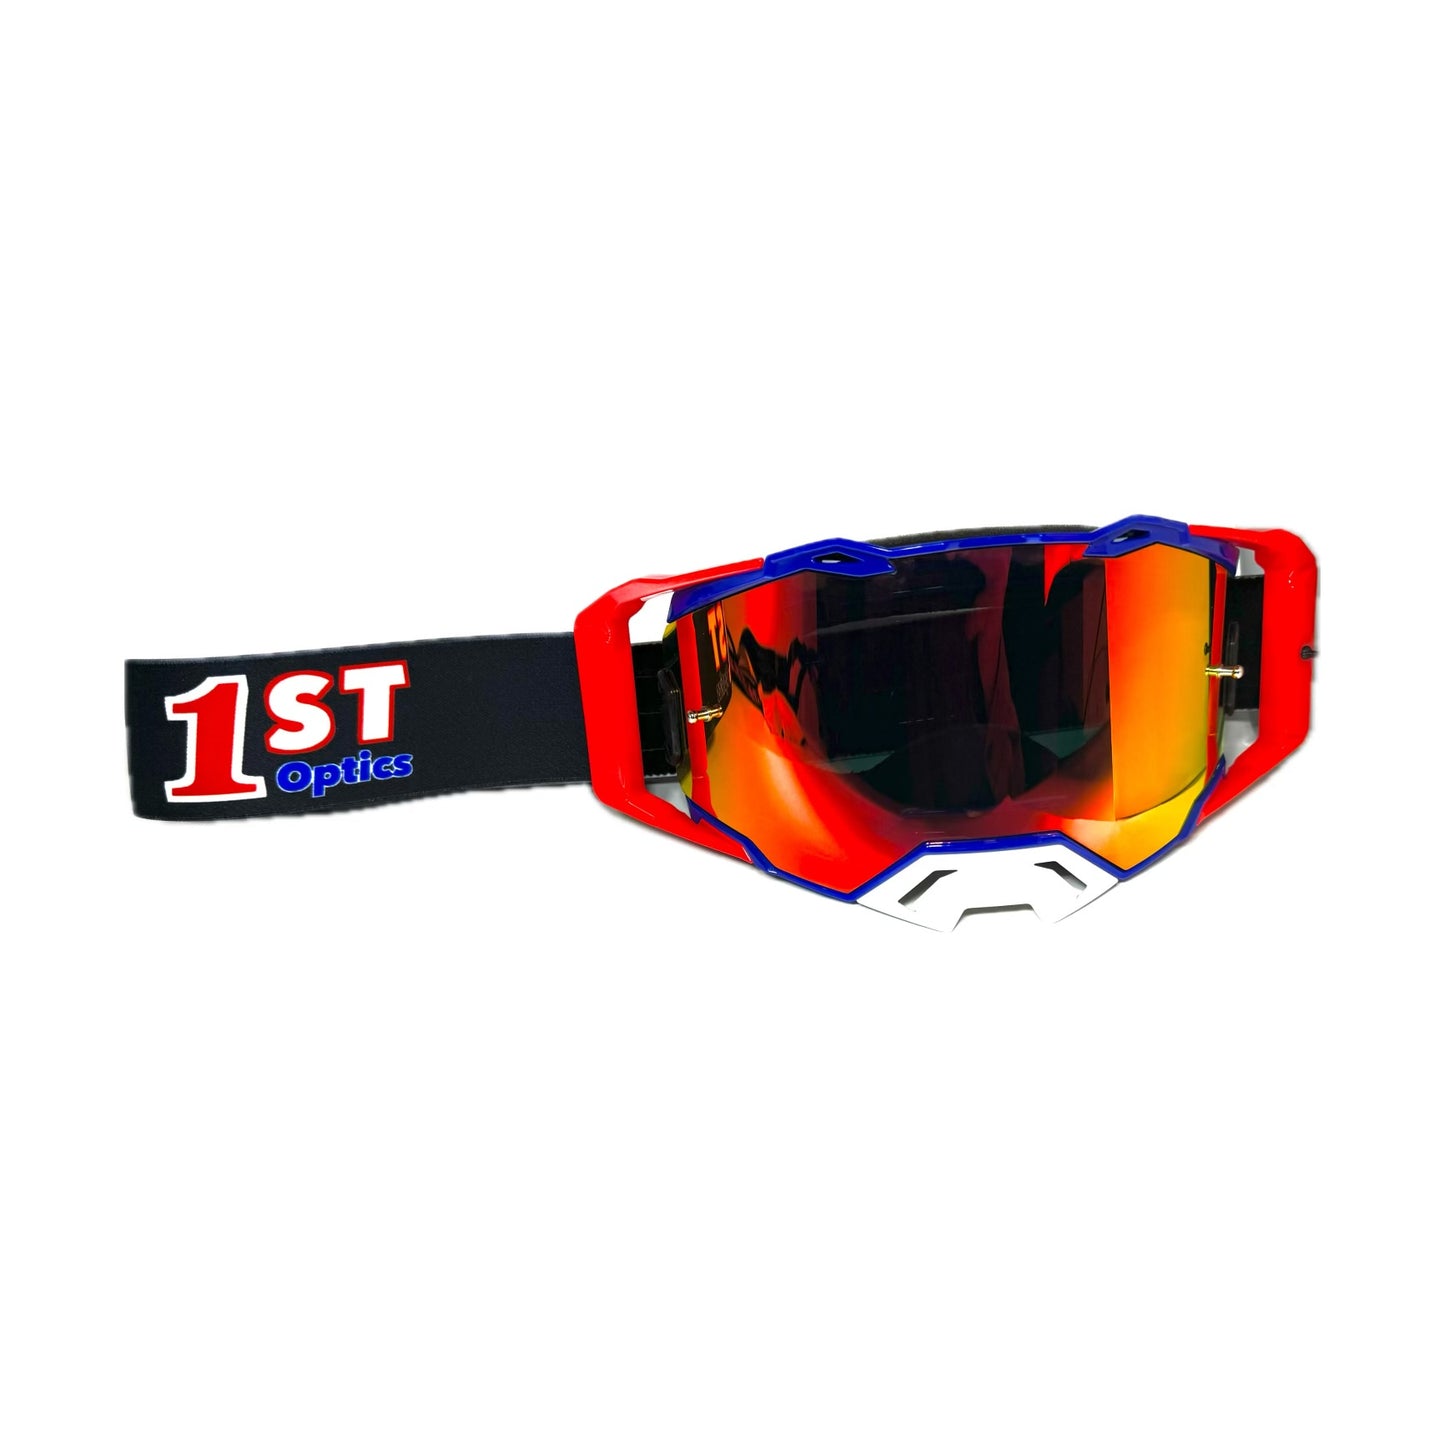 1ST Optics MX Goggle - Blue/Red/White